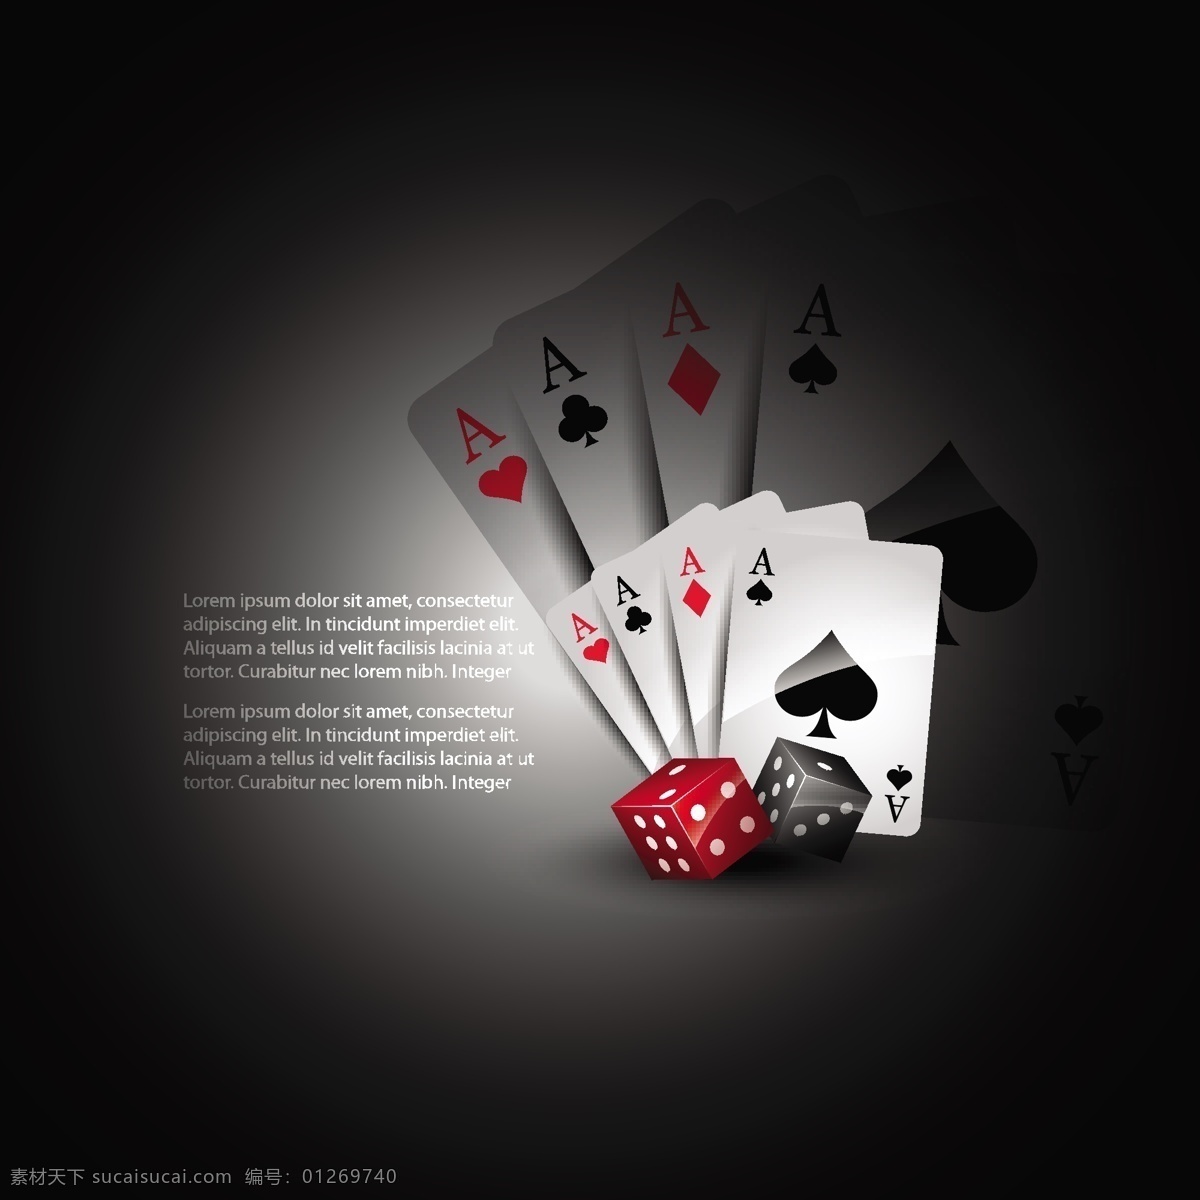 纸牌 骰子 矢量 材料 方形 黑桃 火焰 卡 李子 魔术 扑克 丝带 玻色子 心 打牌 玩 矢量图 日常生活